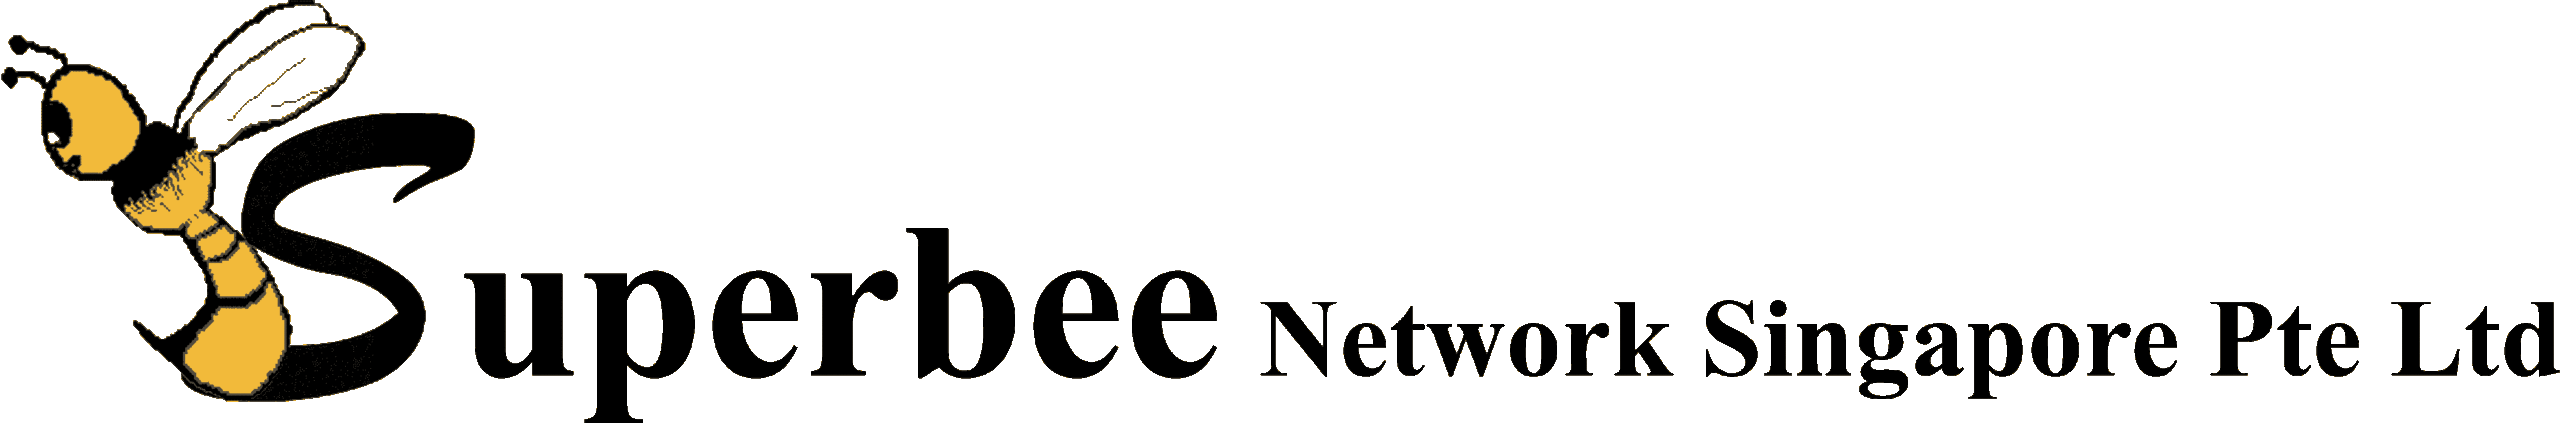 superbee network singapore logo